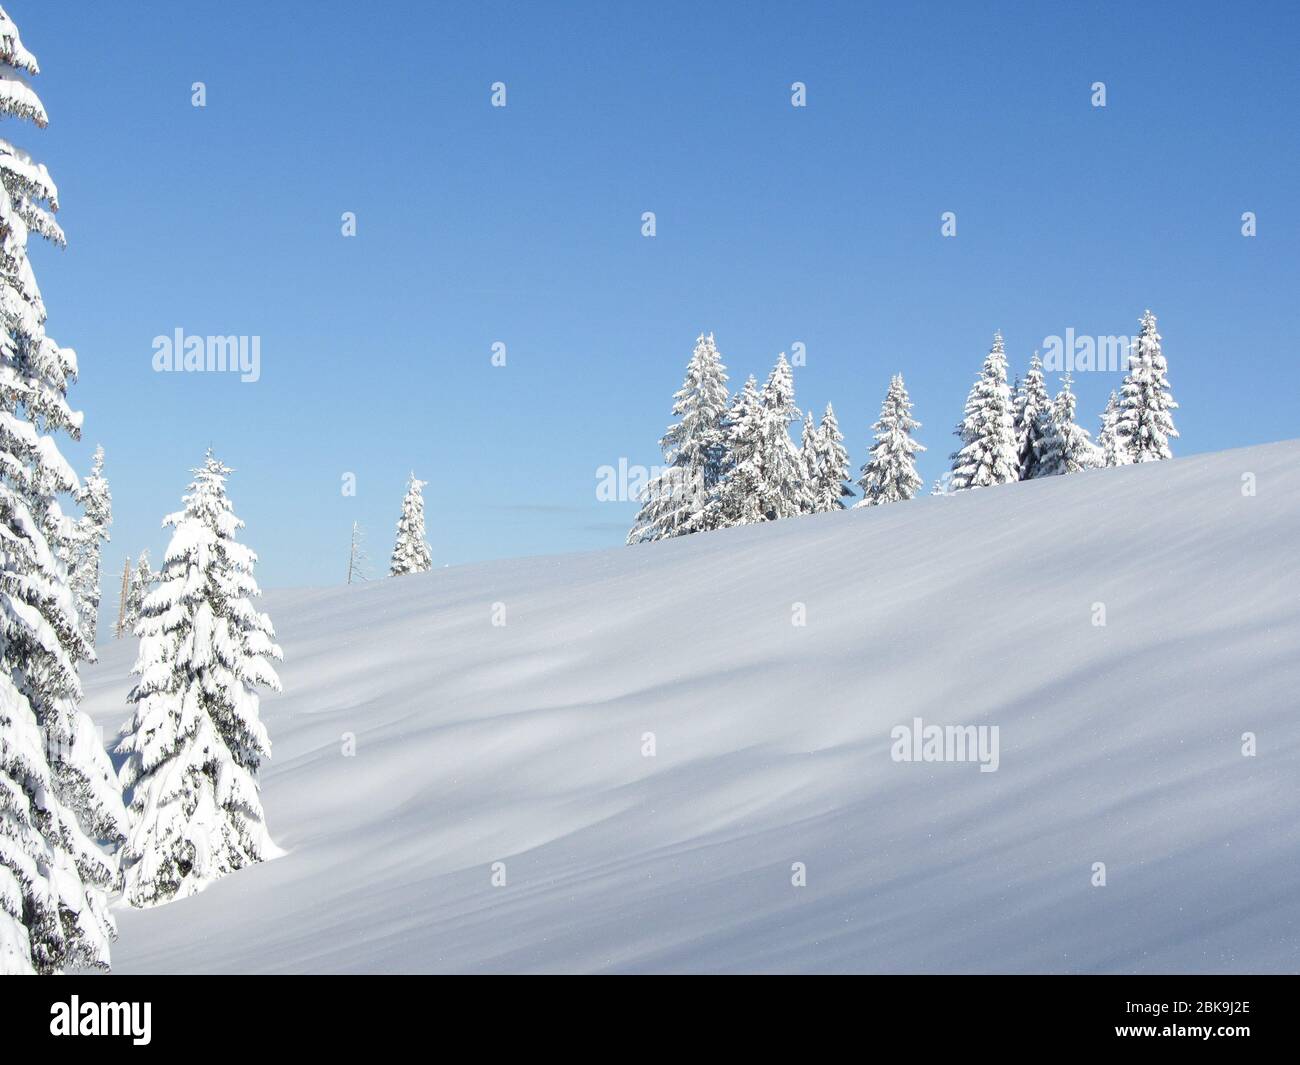 Virgin Snow on the Mountain Stock Photo